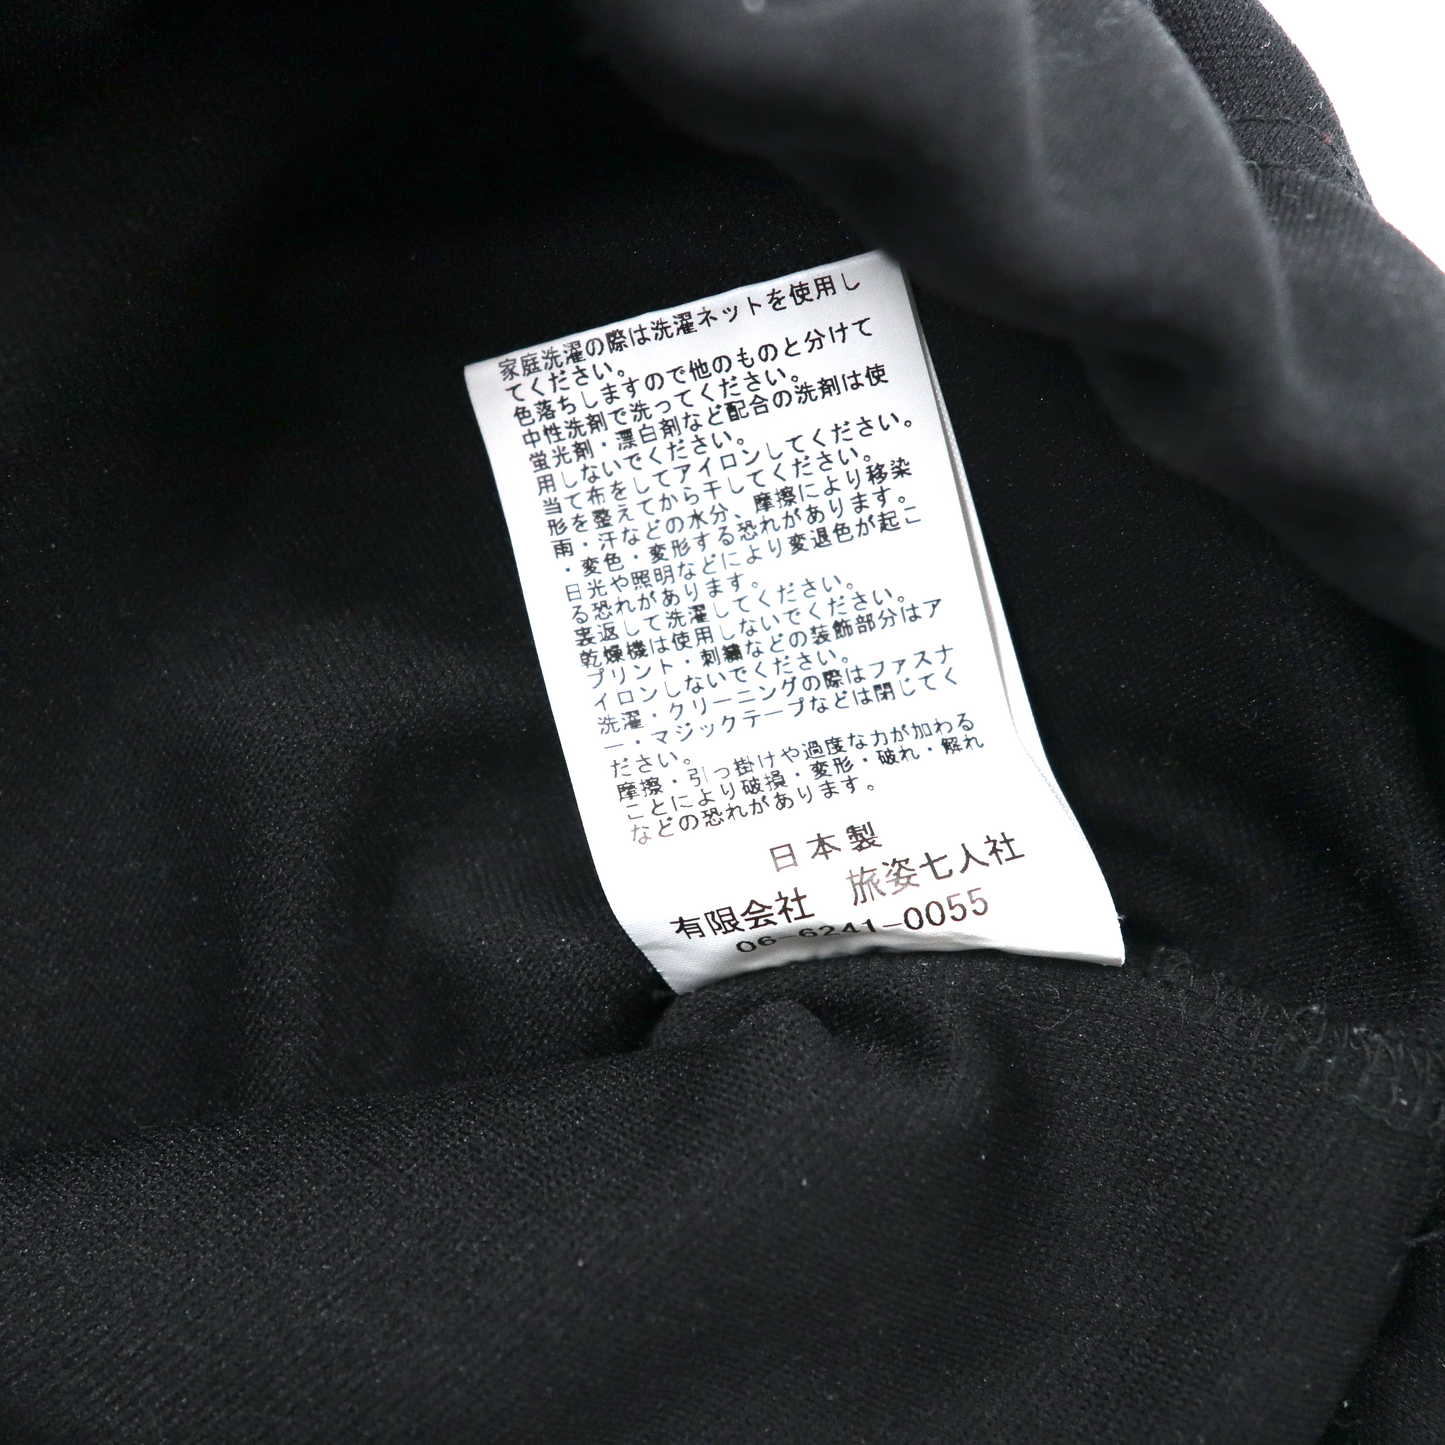 HURRAY HURRAY ユニフォームリメイク ジャージパンツ M ブラック 再構築 composition UNI PANTS c5005 日本製